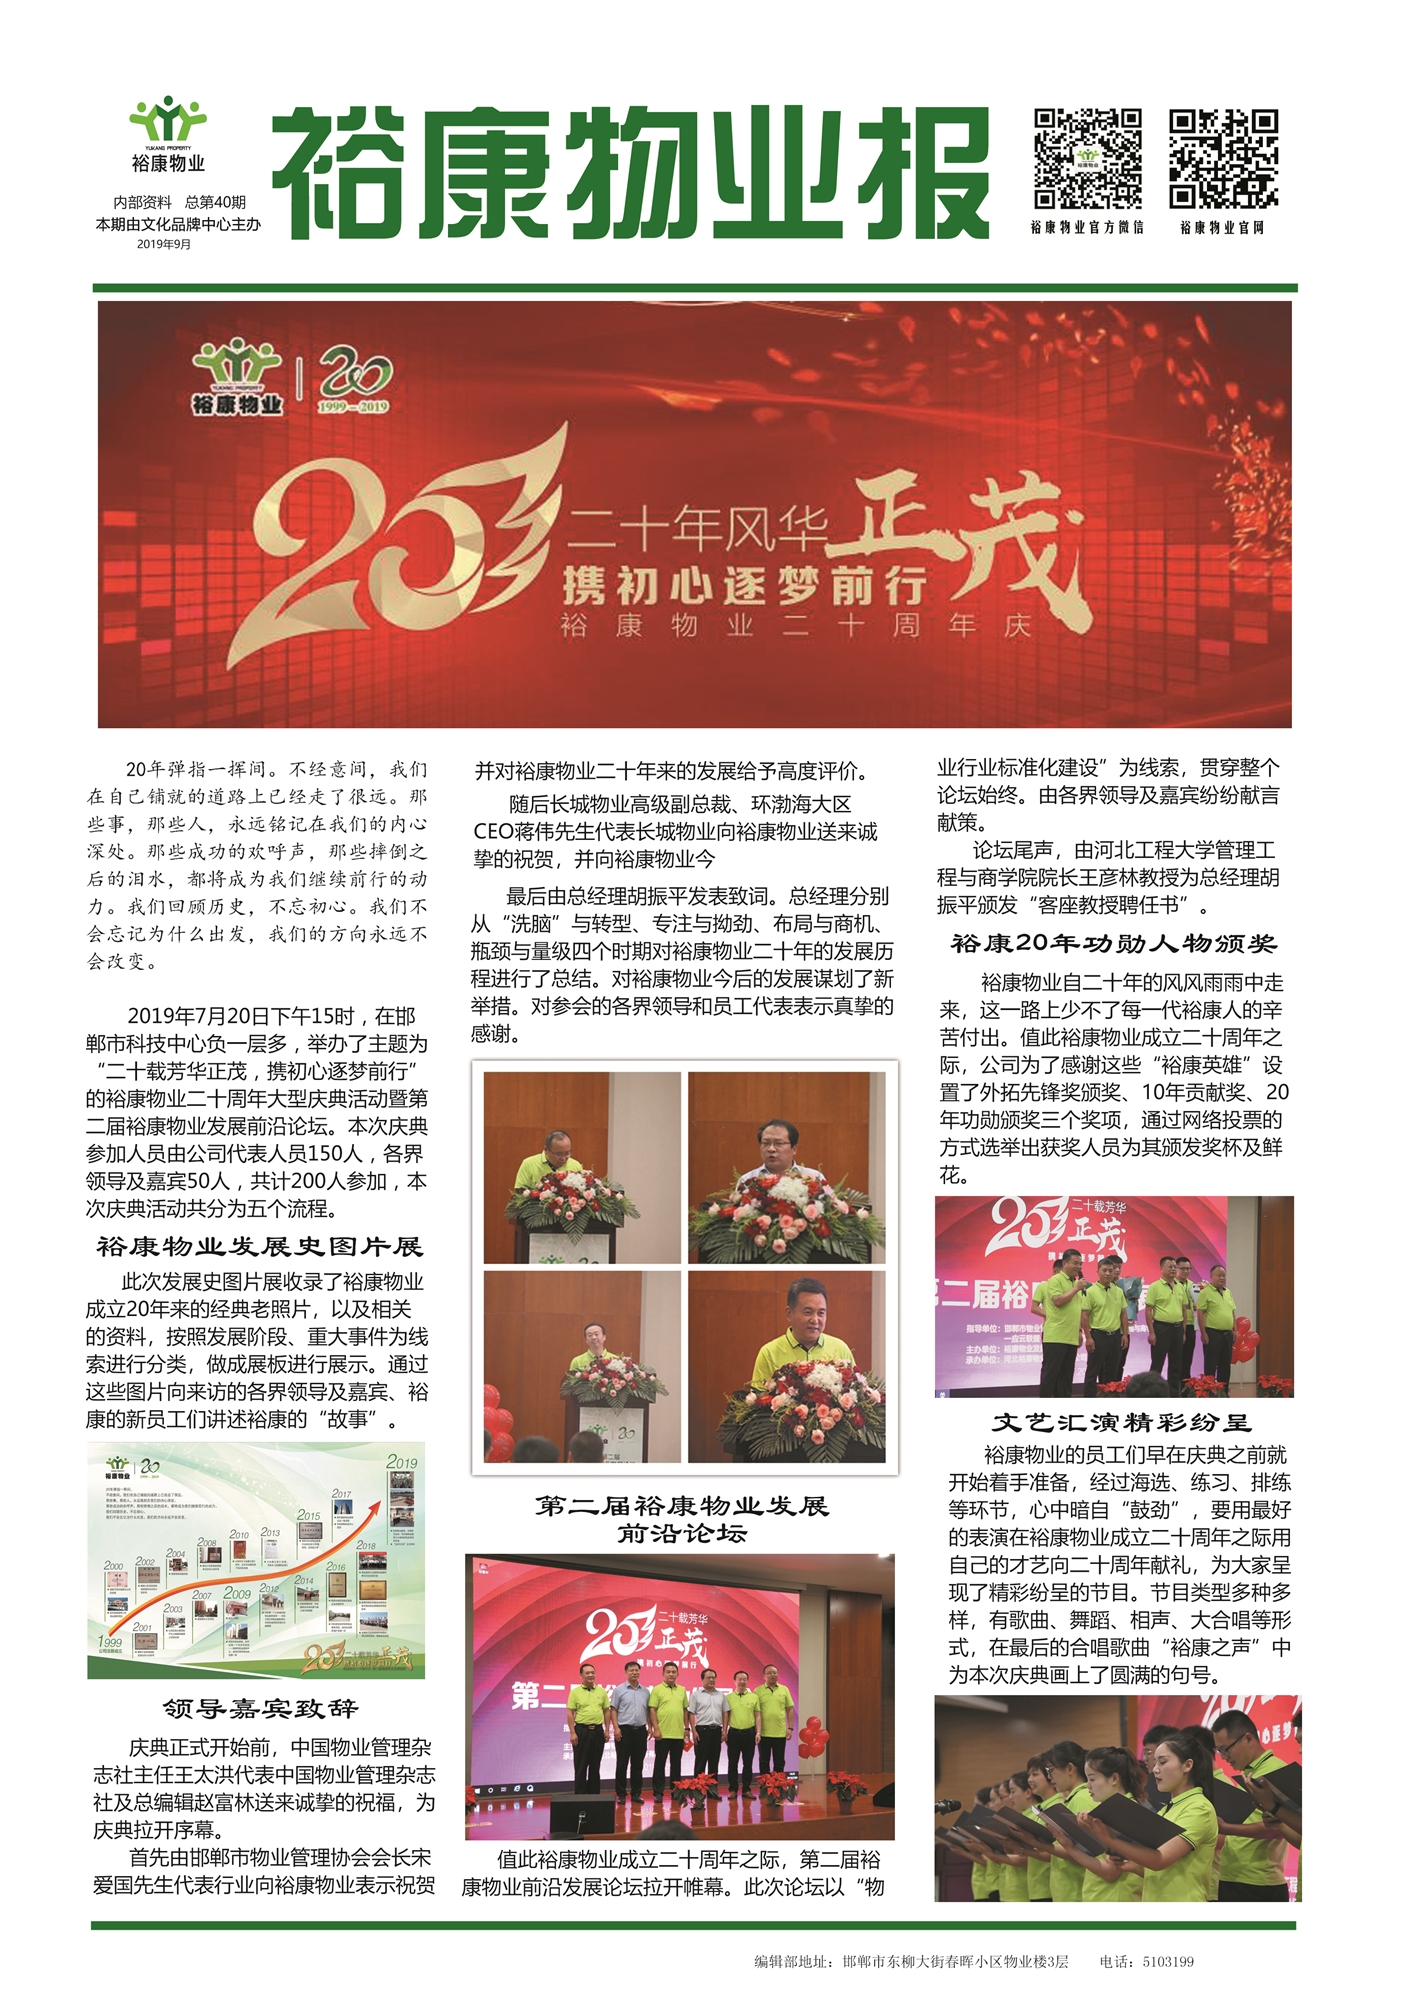 2019年9月刊“裕康物業二十周年慶典”